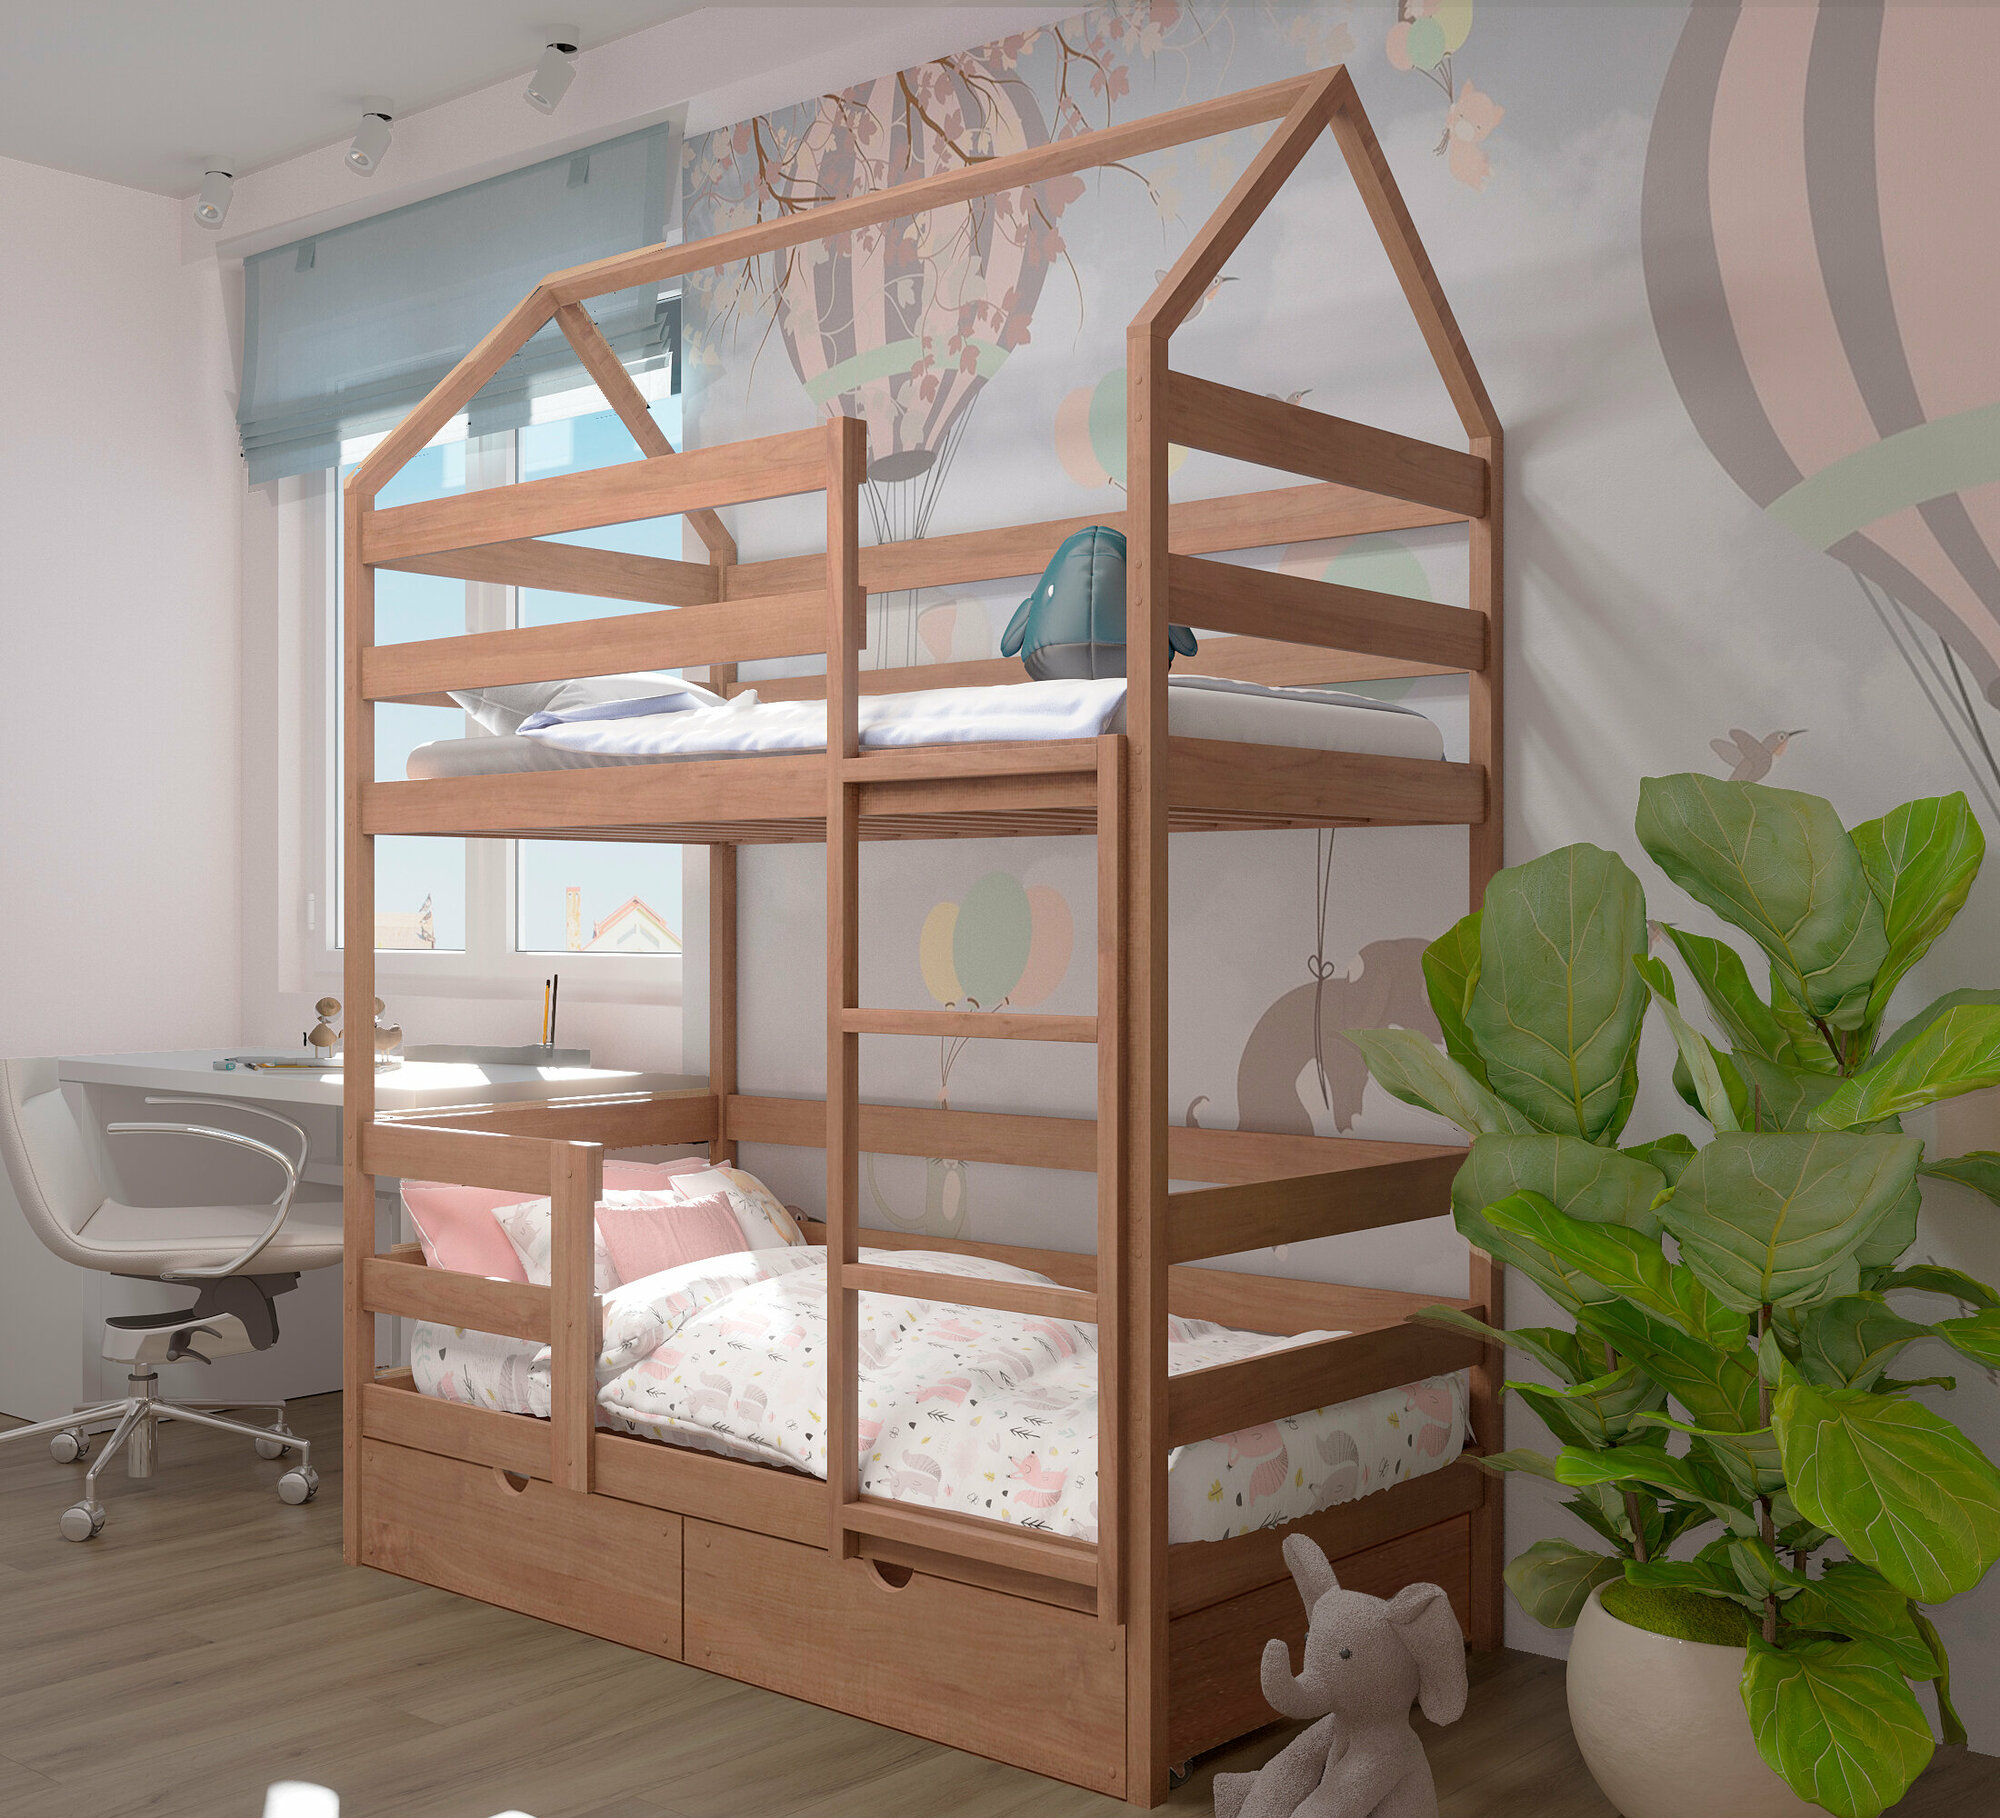 Кровать детская, подростковая "Двухъярусная-домик", спальное место 160х80, в комплекте с выкатными ящиками, натуральный цвет, из массива